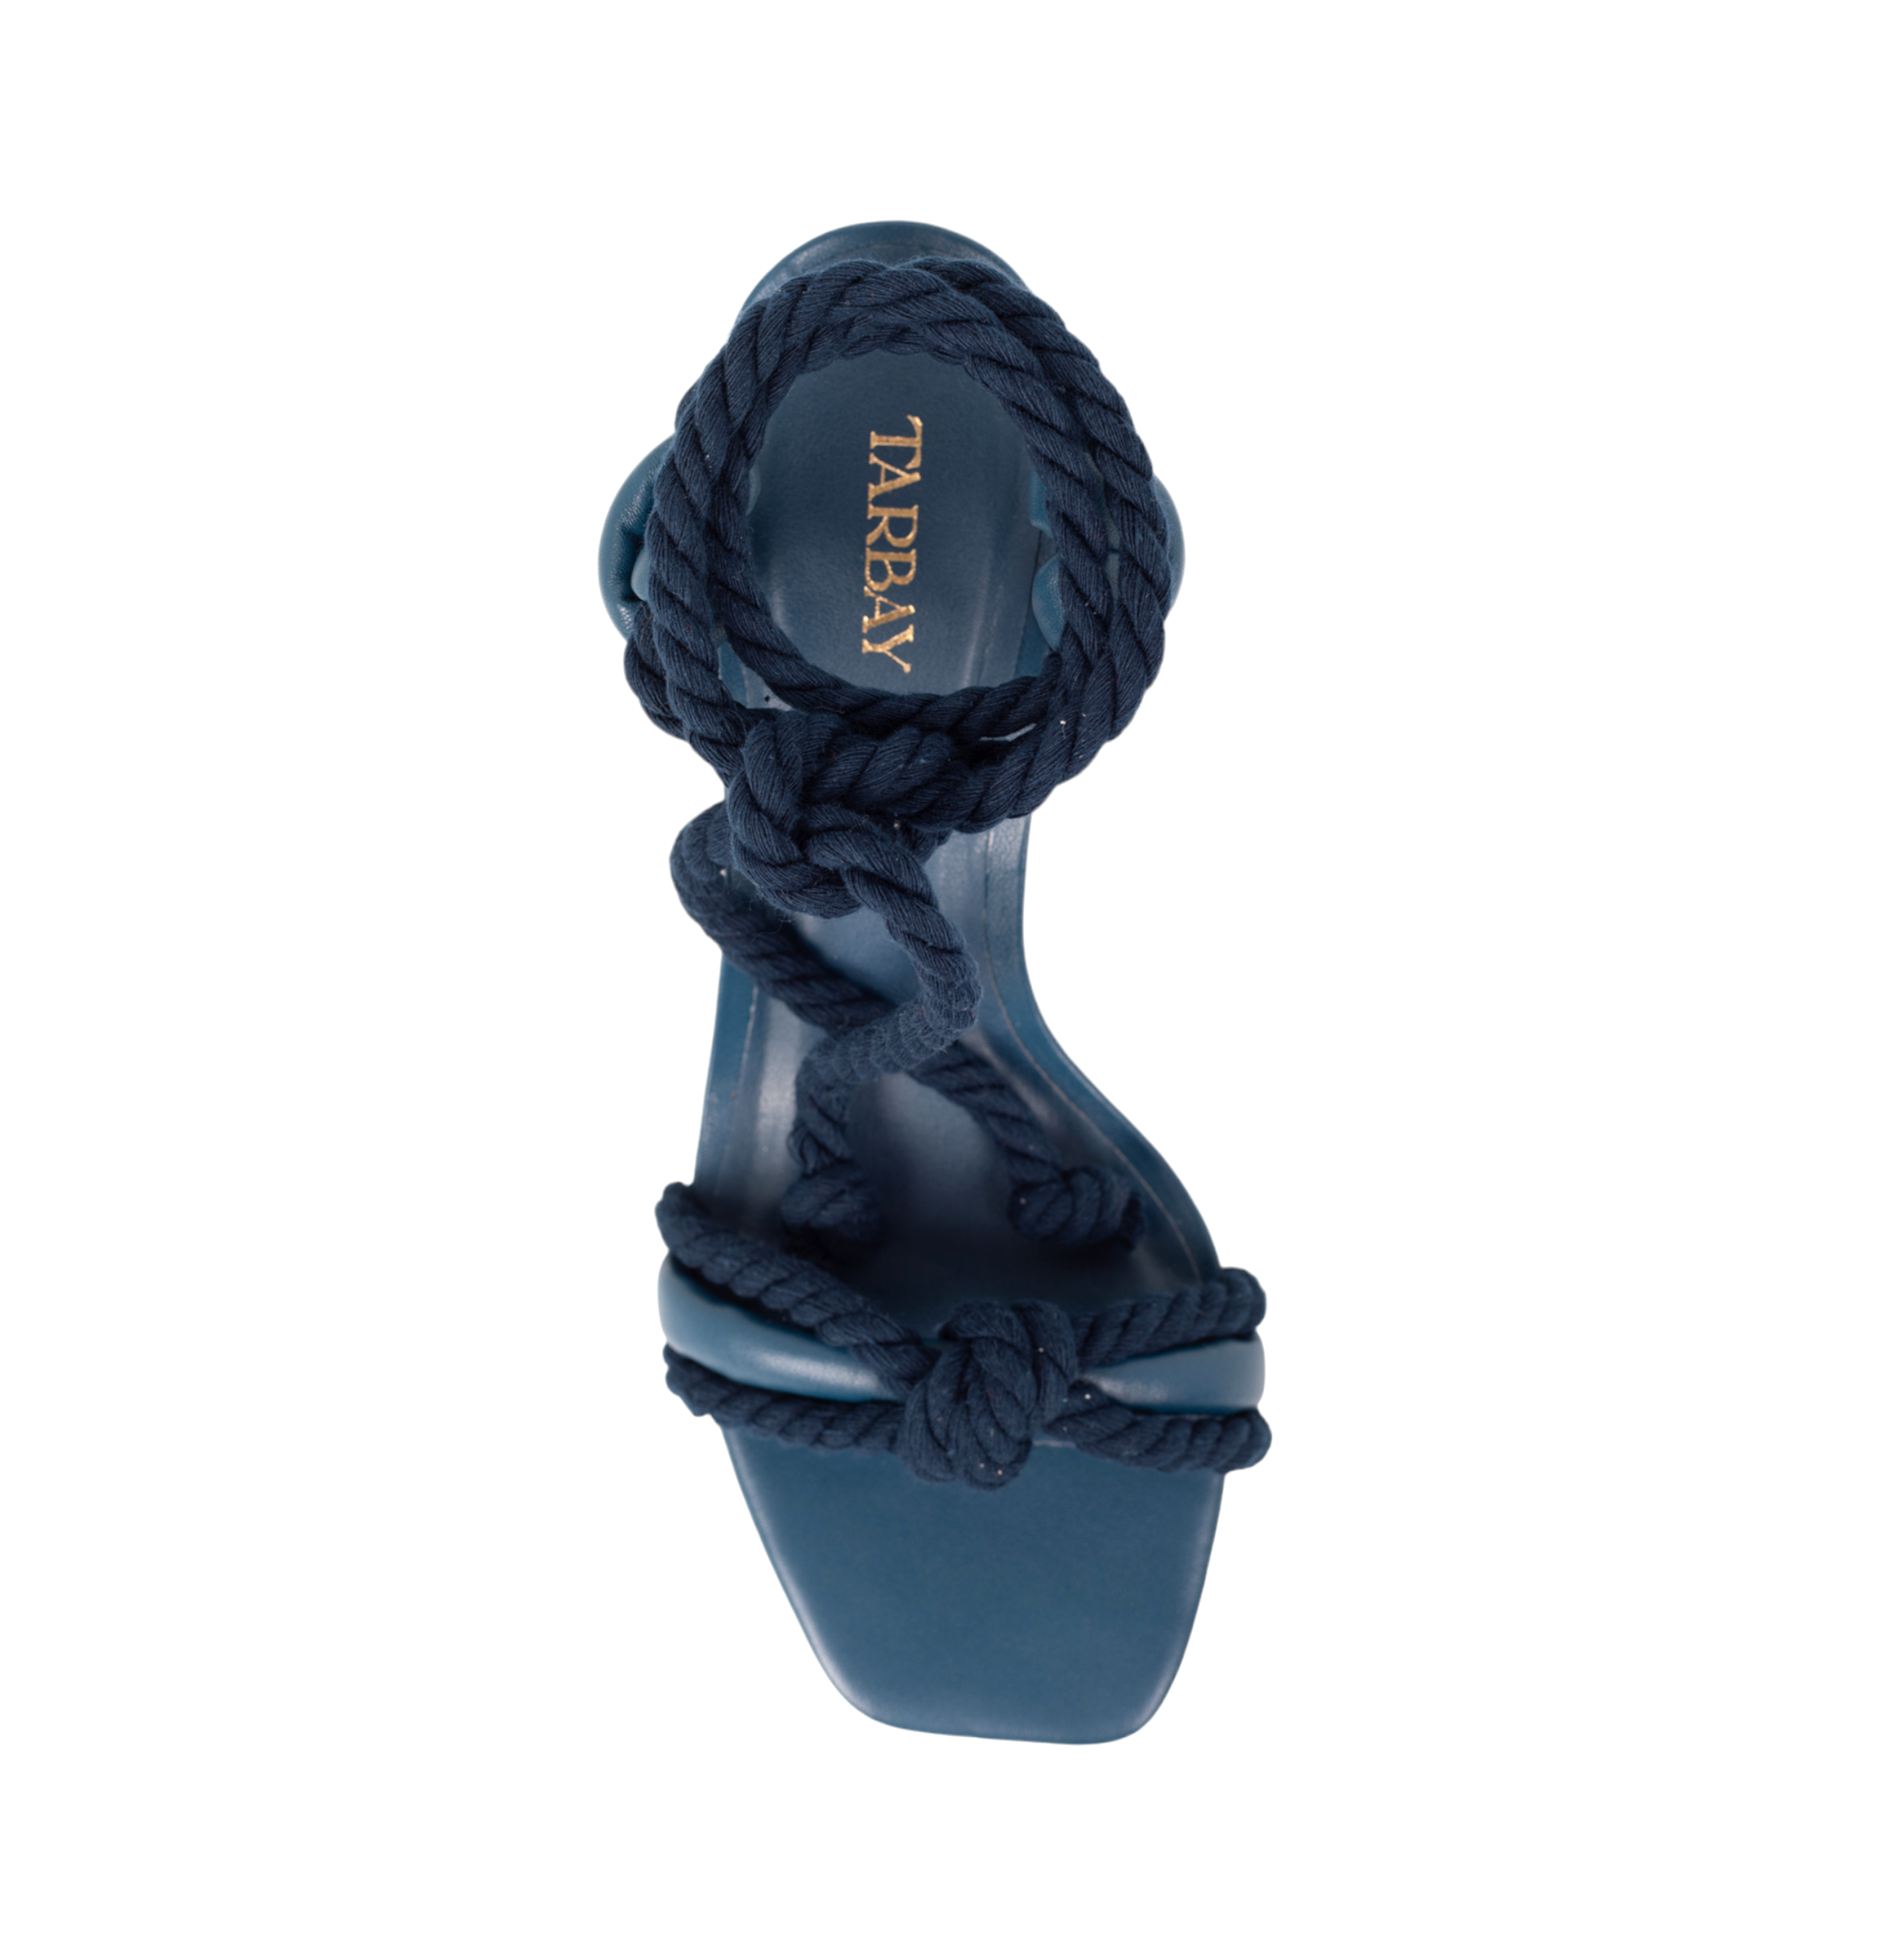 Arenisca Heels Sandals - Navy Blue Sandals TARBAY   